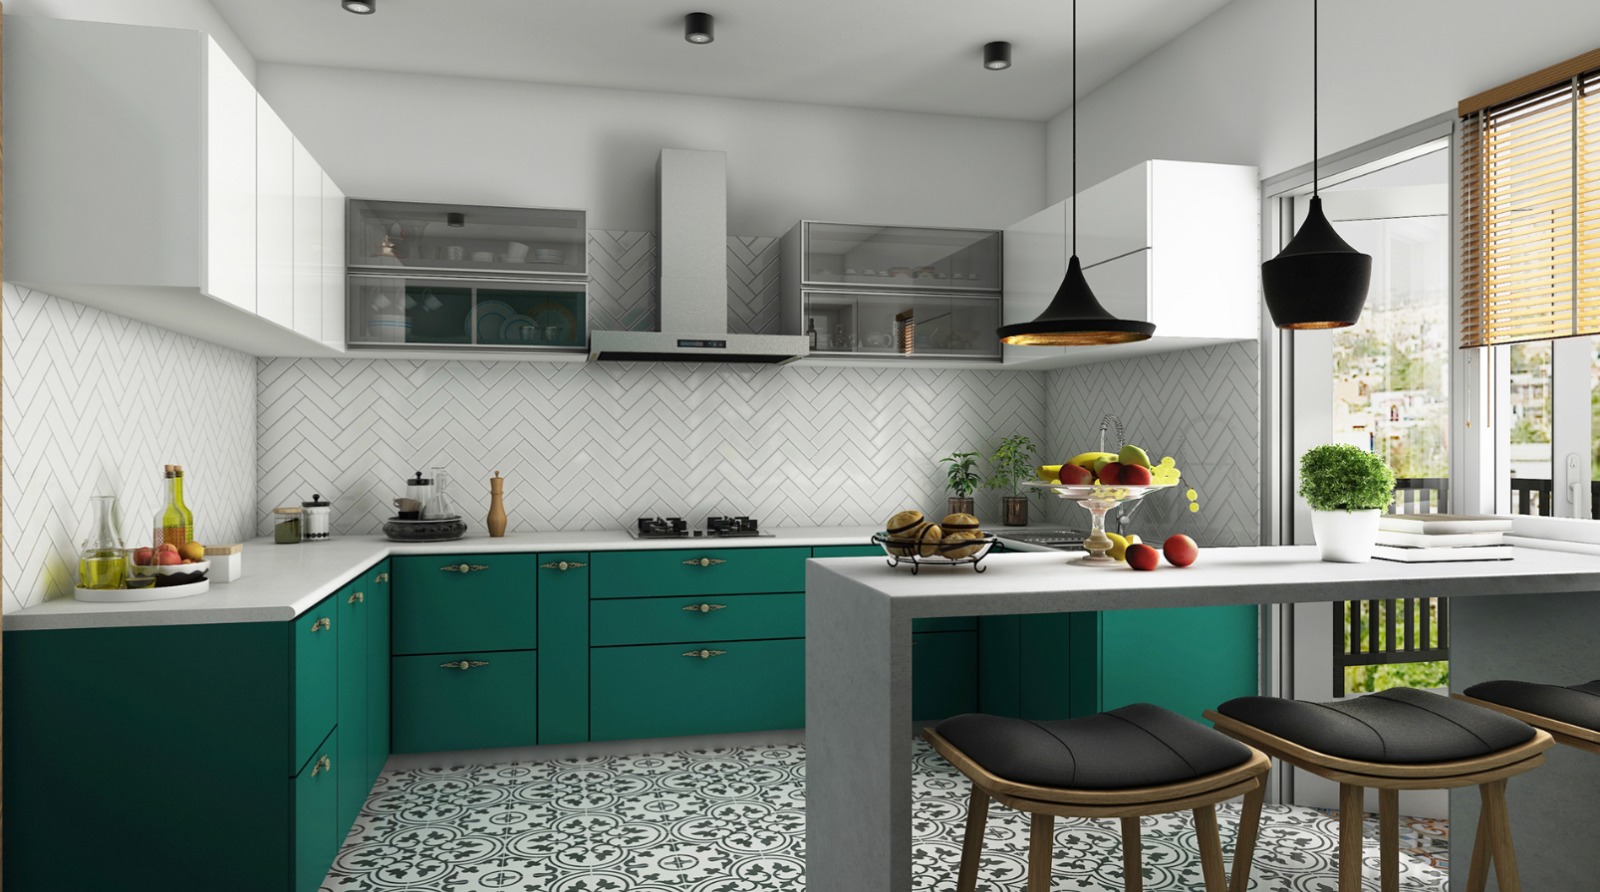 modular kitchen interior design